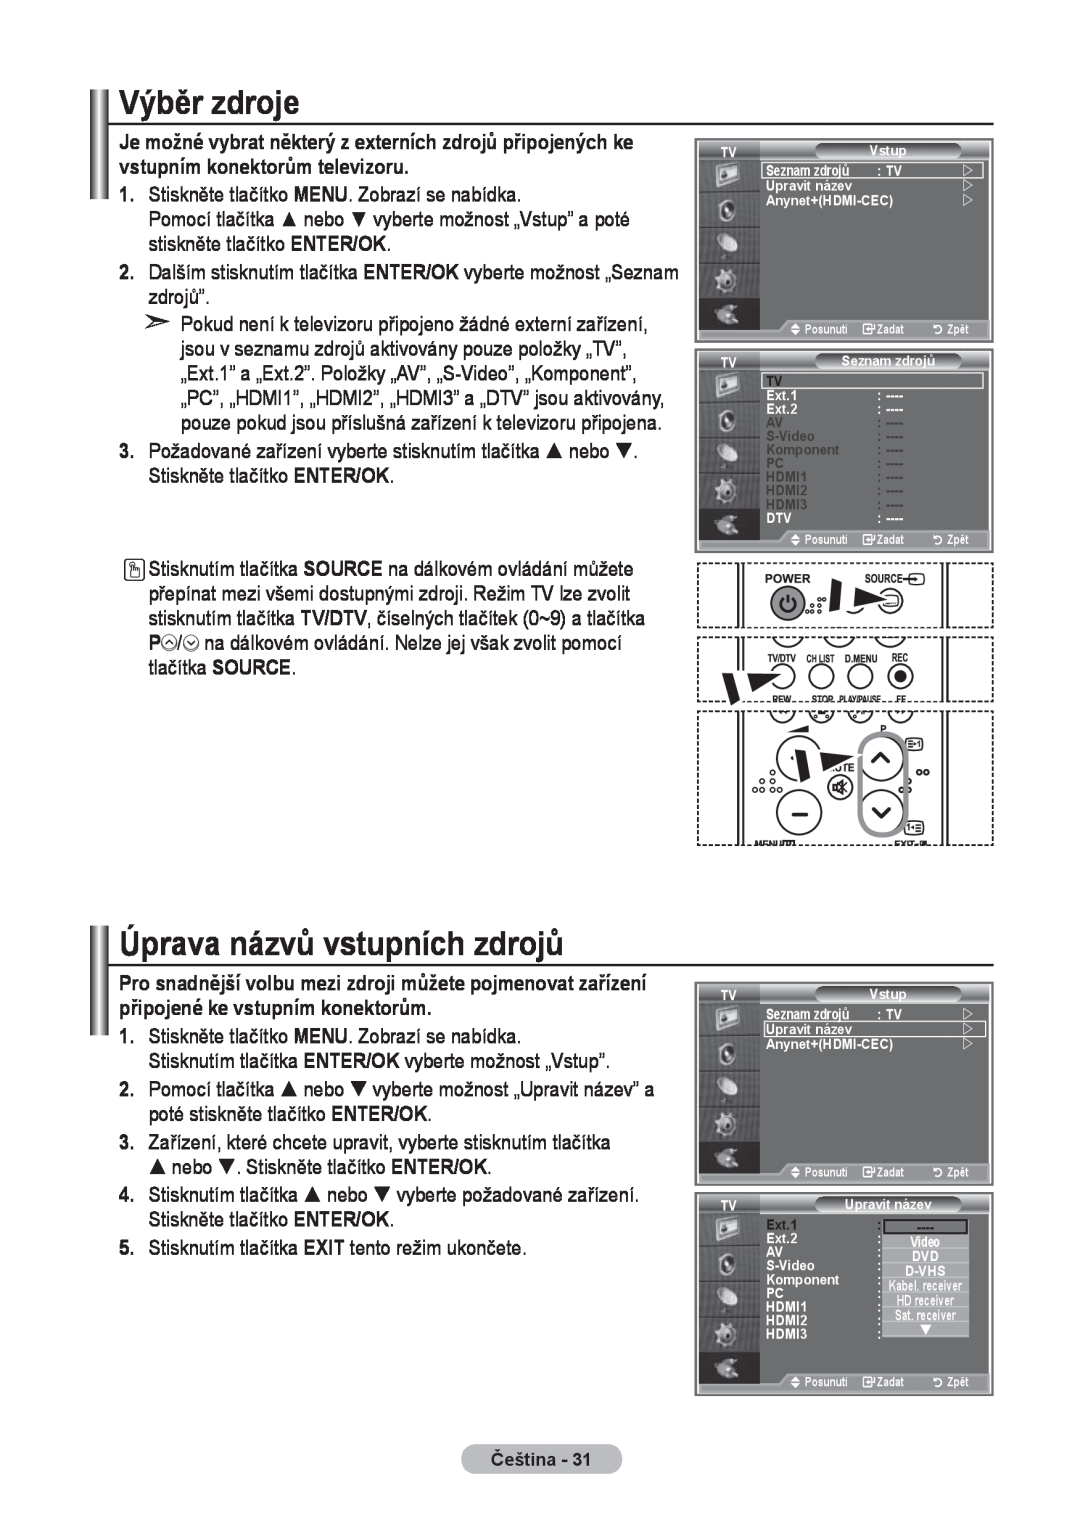 Samsung LE40R8, LE37R8, LE32R8 manual Výběr zdroje, Úprava názvů vstupních zdrojů, Ext.1 